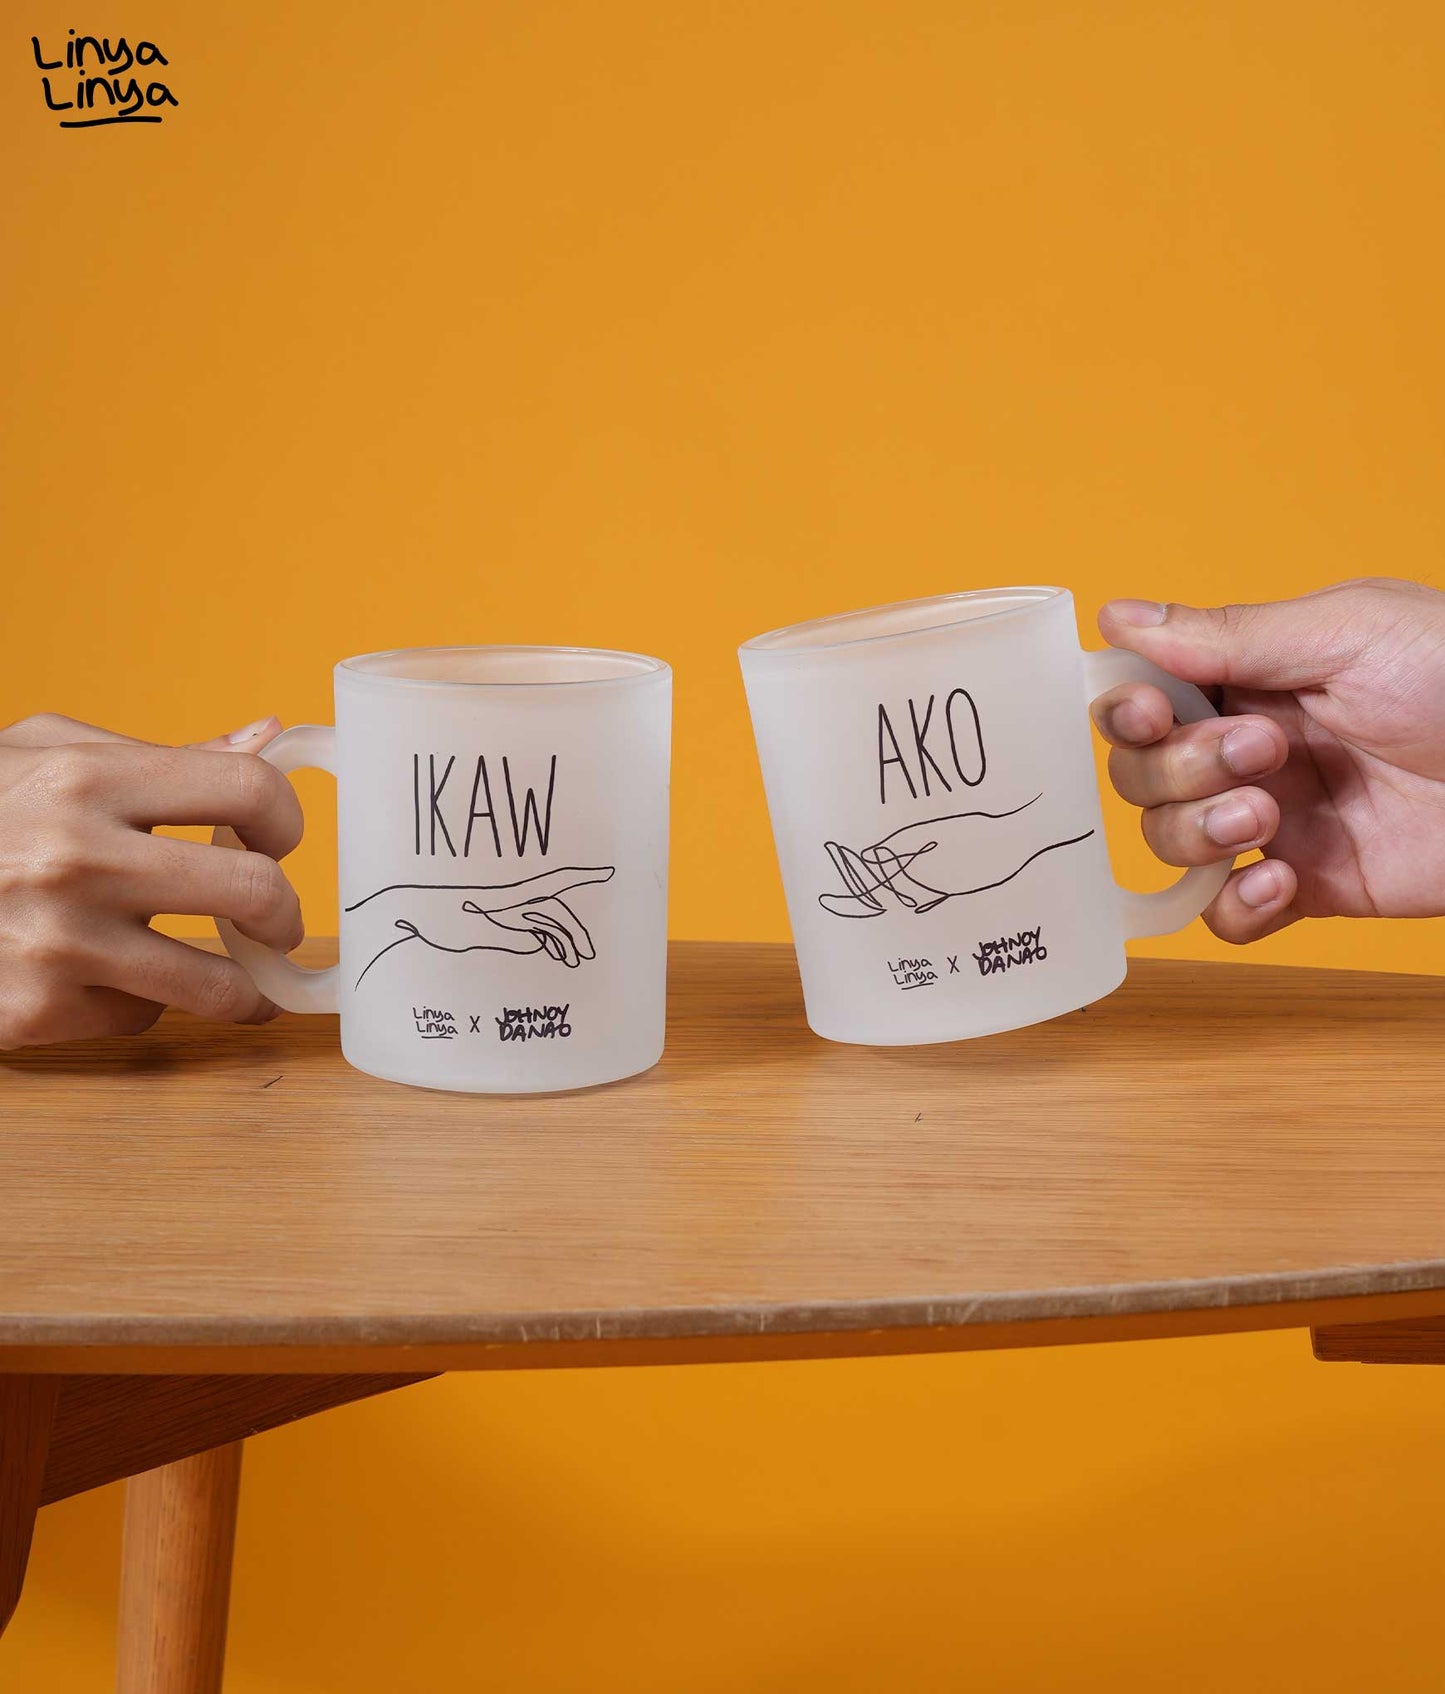 Frosted Mug: Linya-Linya x Johnoy Danao: Ikaw at Ako